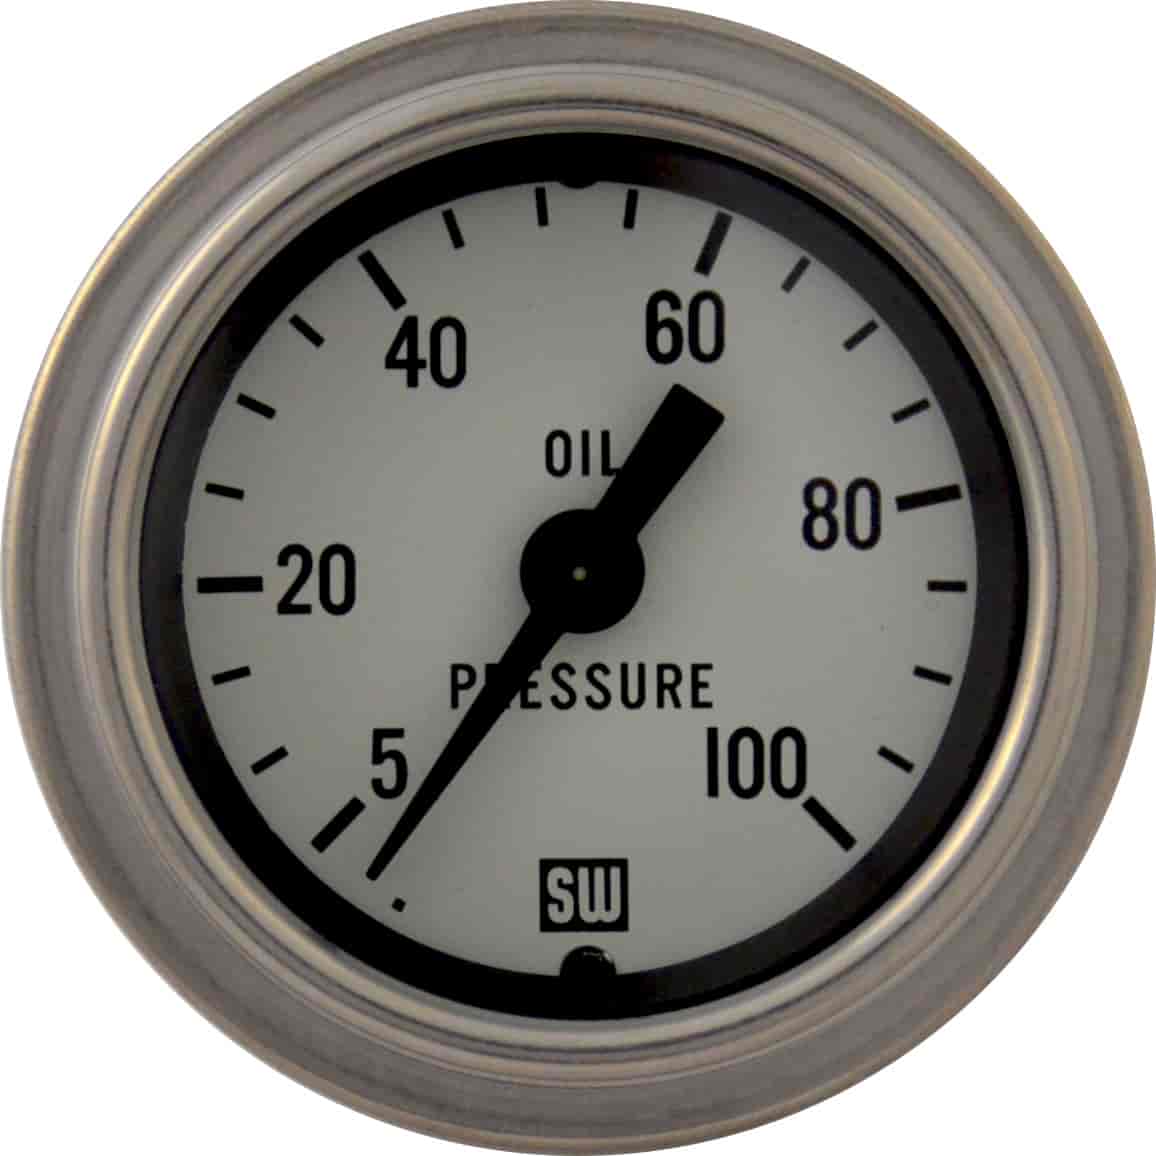 Deluxe-Series Oil Pressure Gauge, 2-1/16 in. Diameter, Mechanical - White Facedial